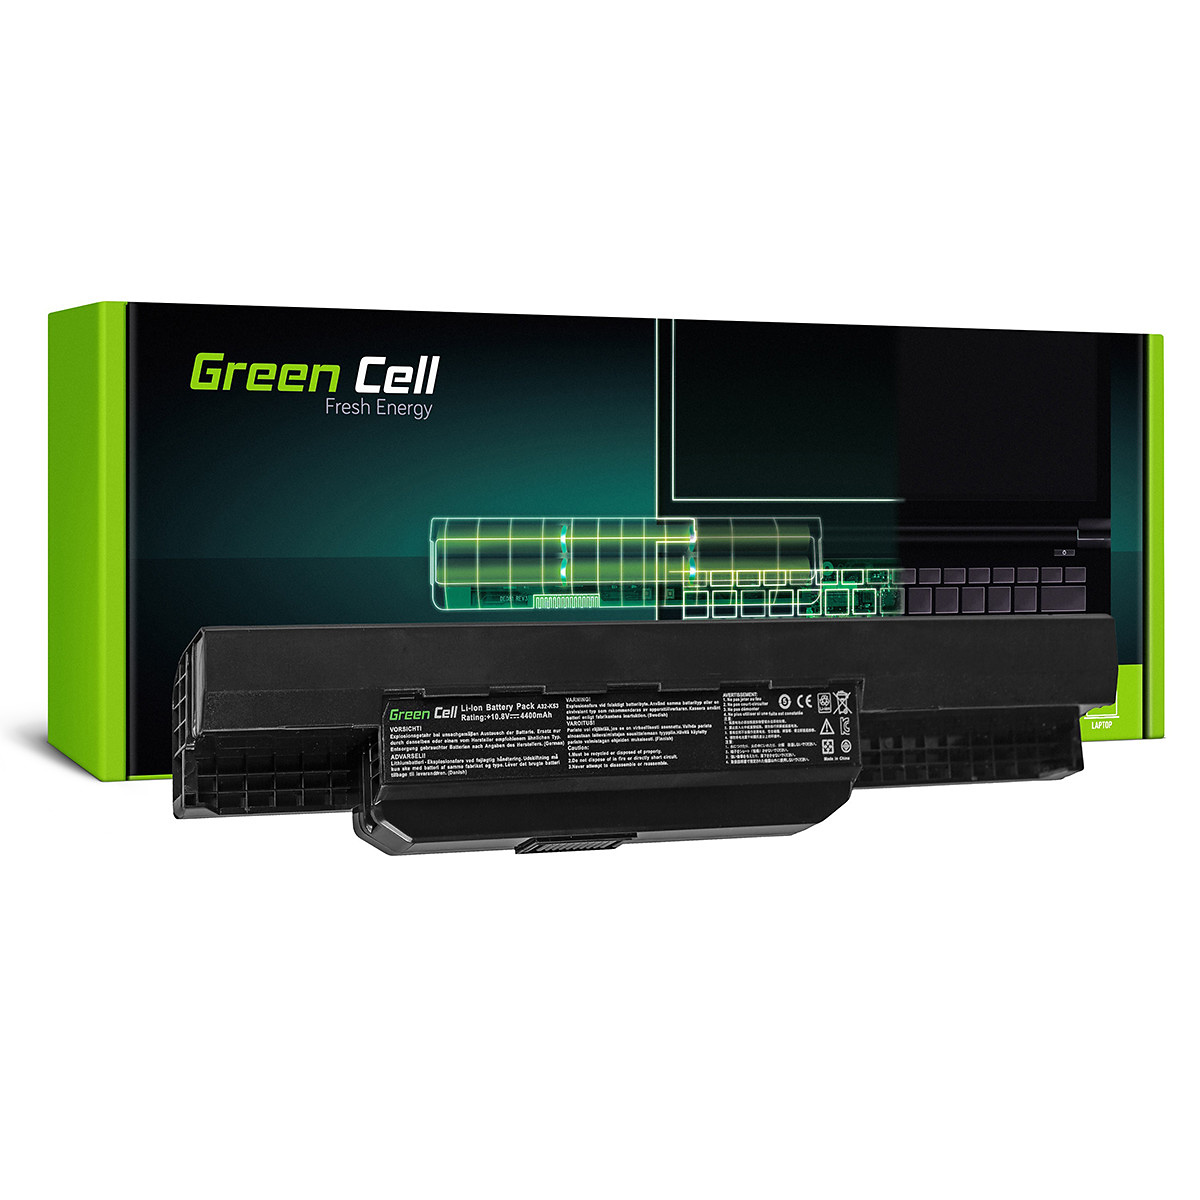 Green Cell Batteri för Asus A31-K53 X53S, 11.1V, 4400mAh